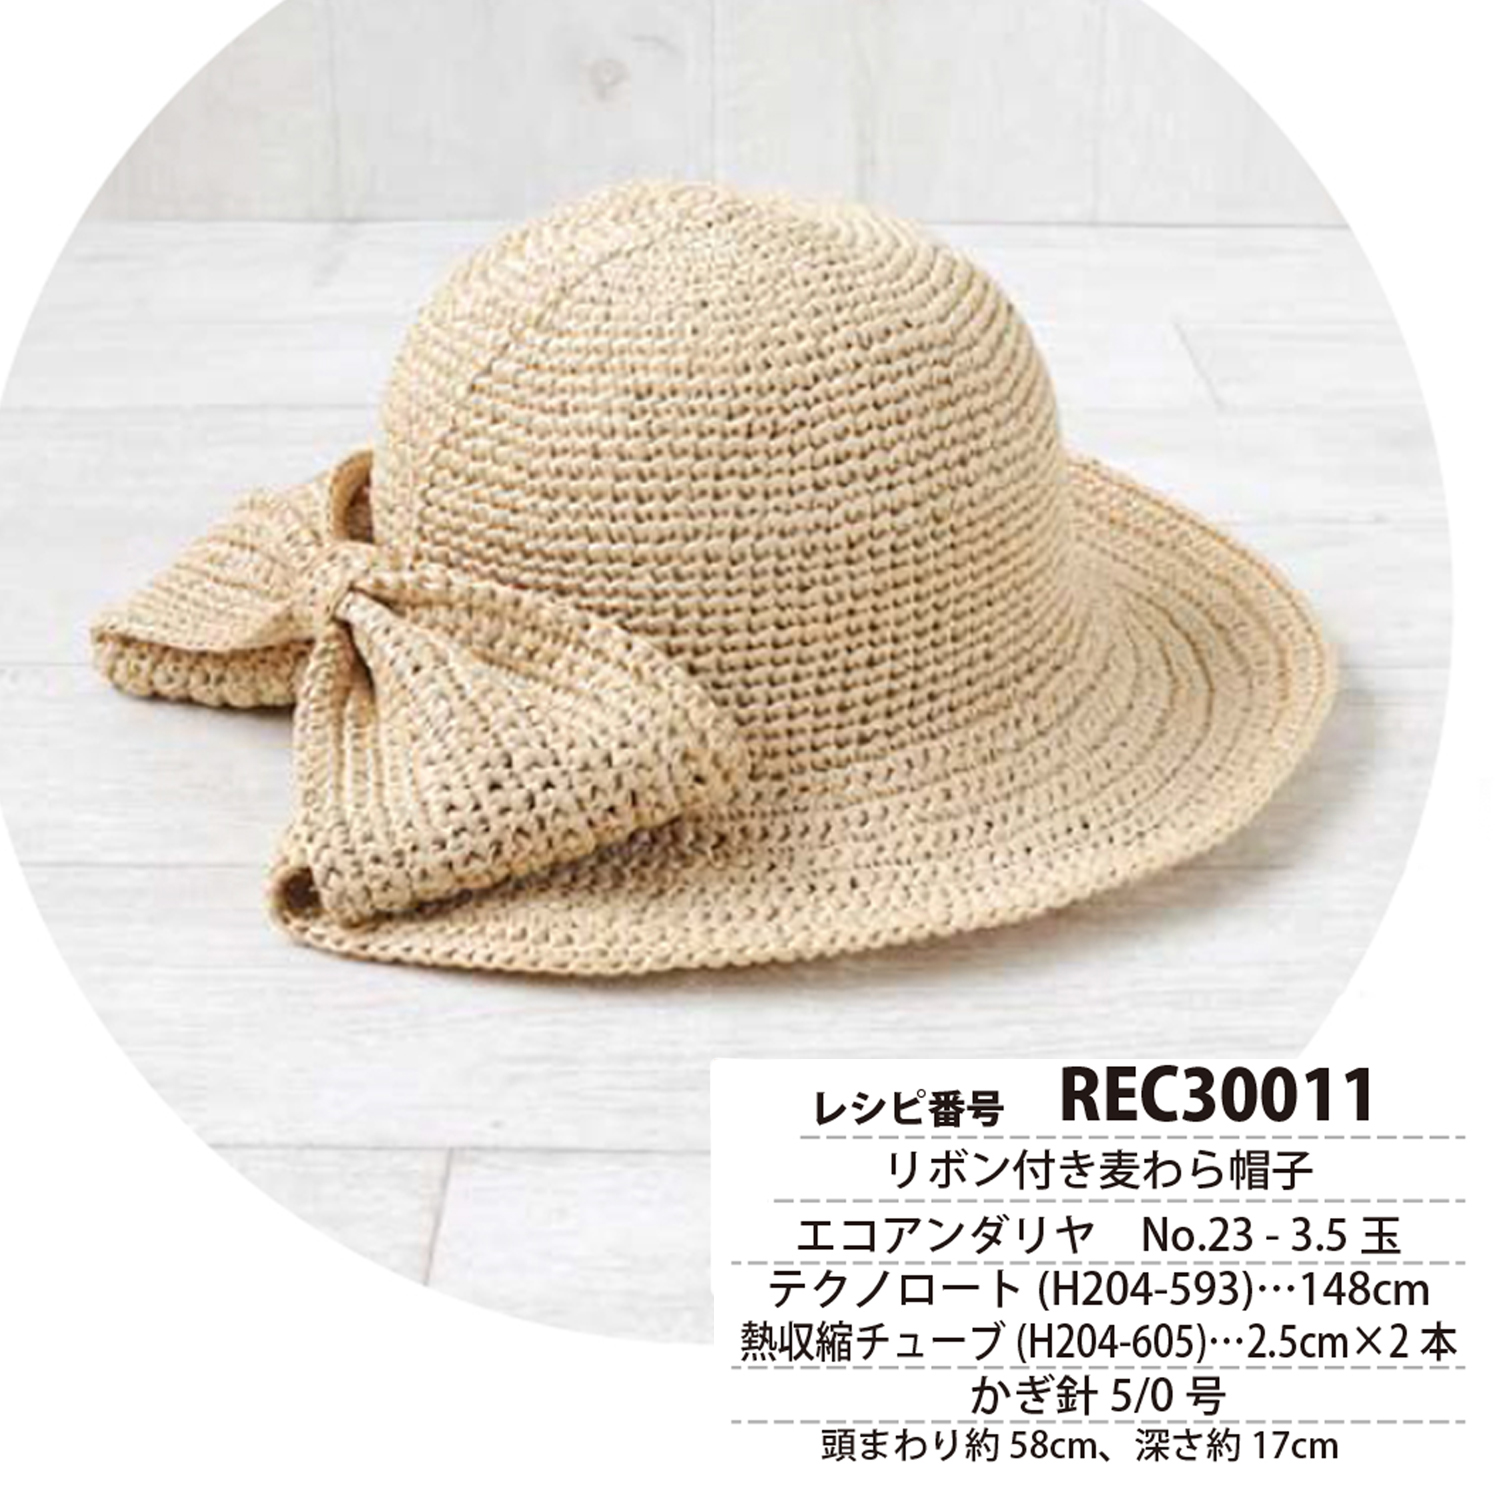 REC30011　リボン付き麦わら帽子　レシピ(枚)